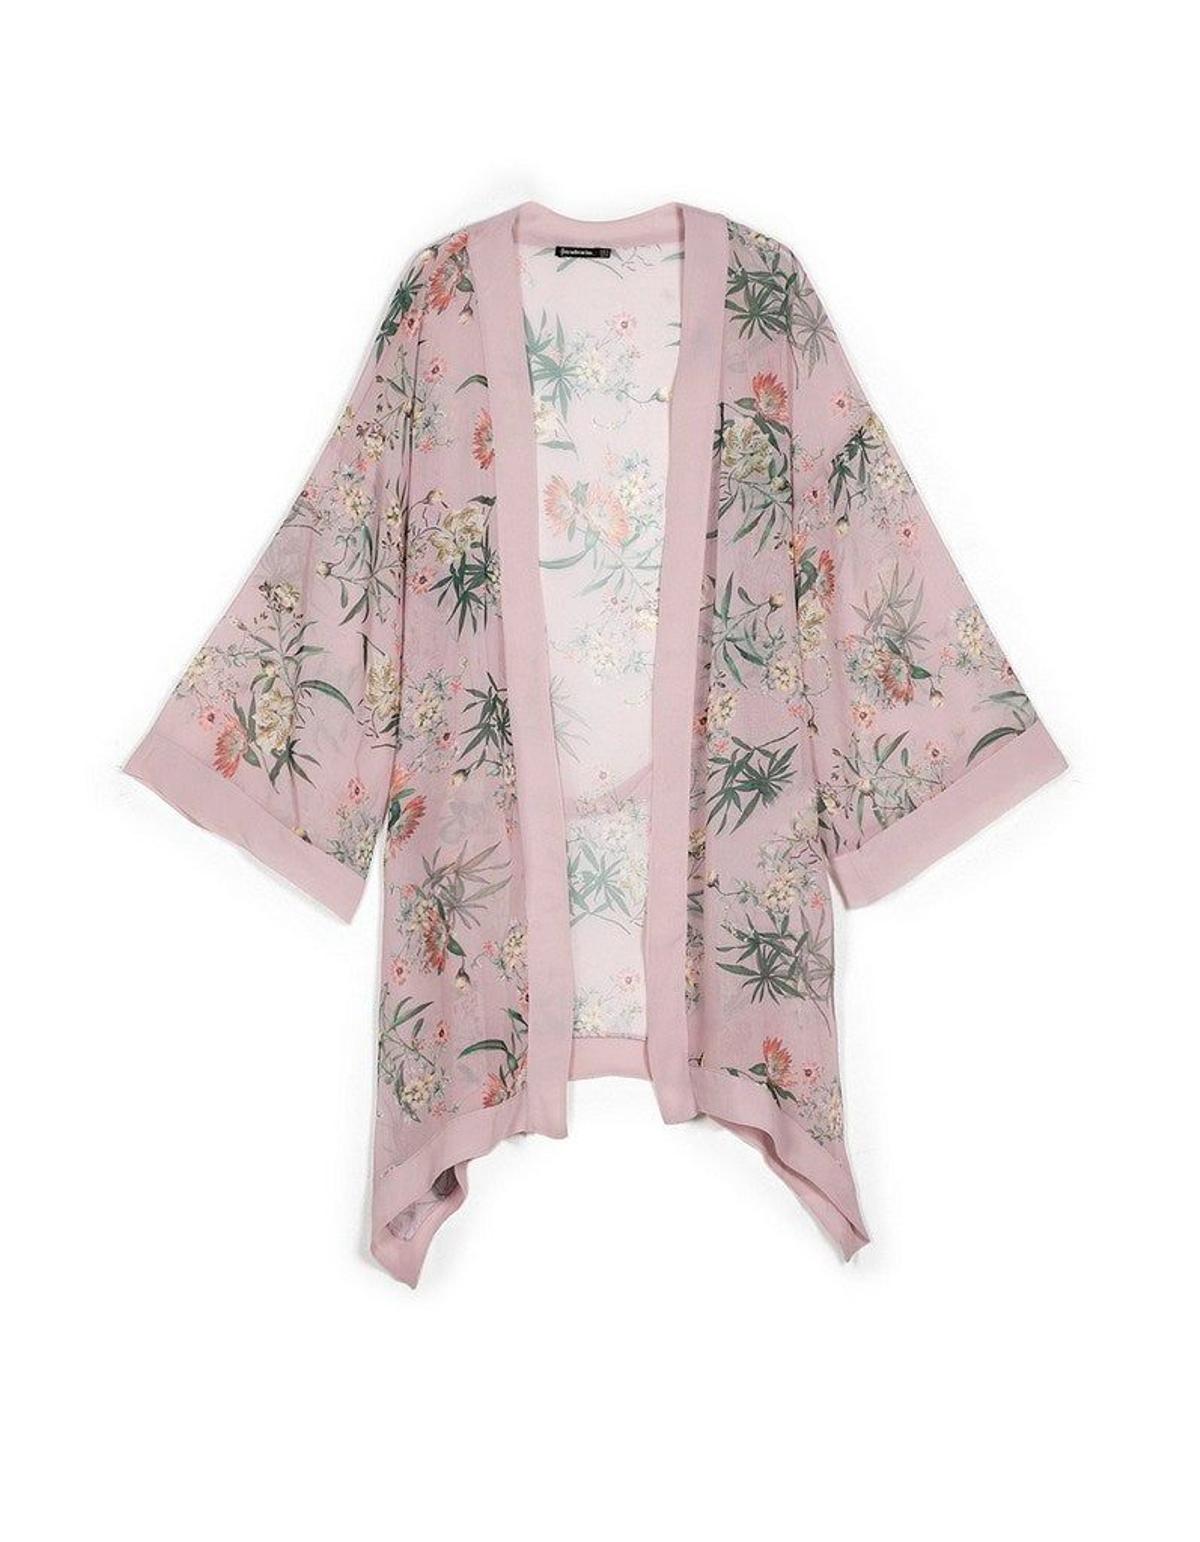 Trend alert: vuelven los kimonos